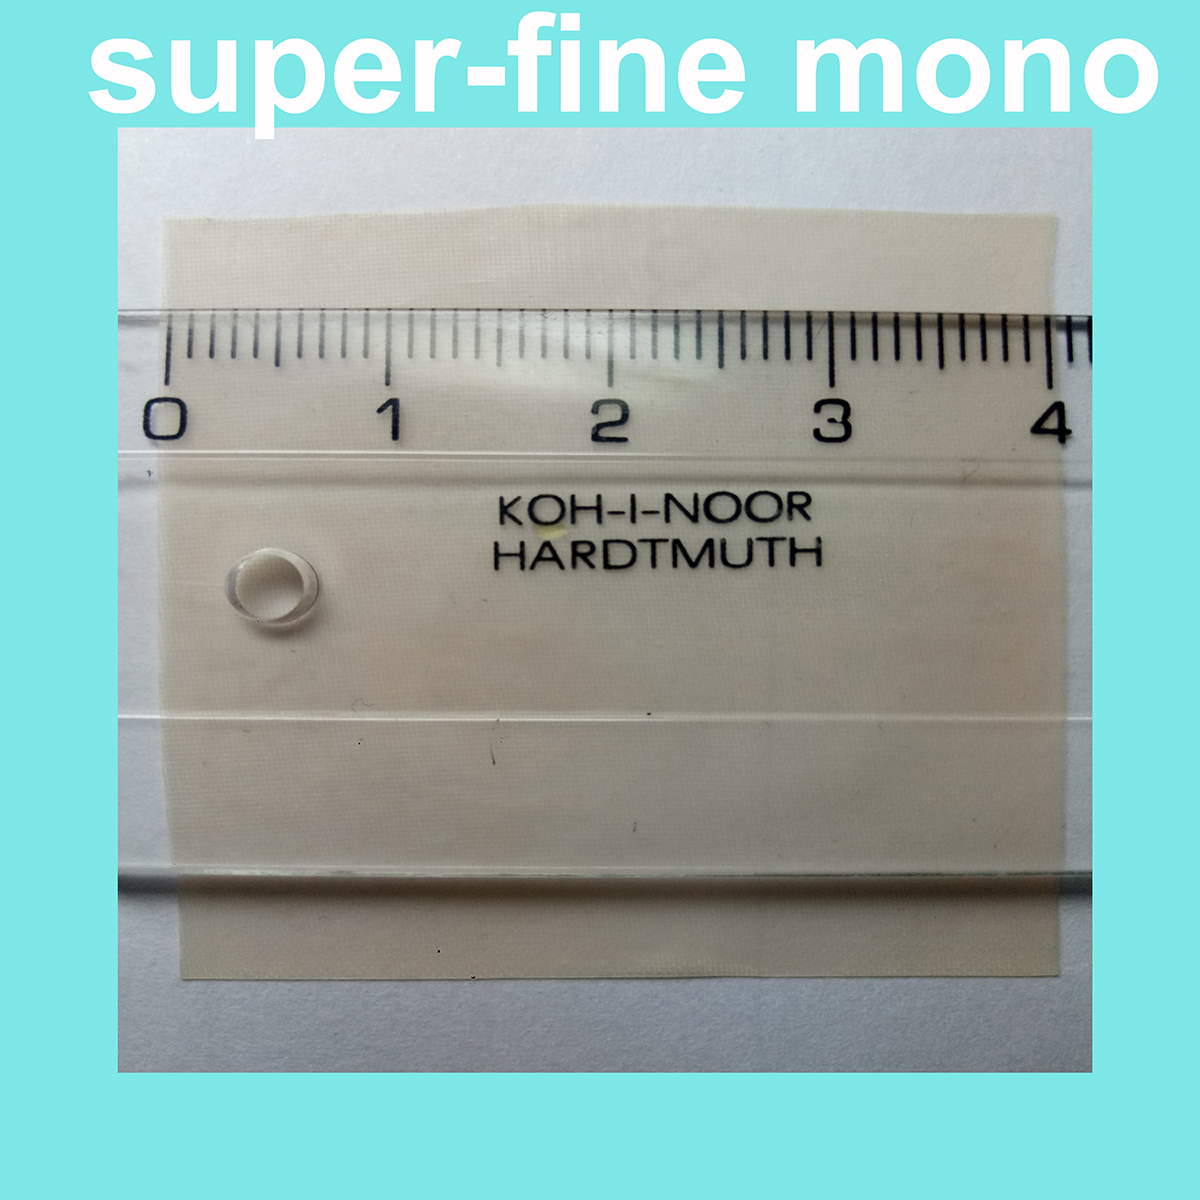 super-fine mono